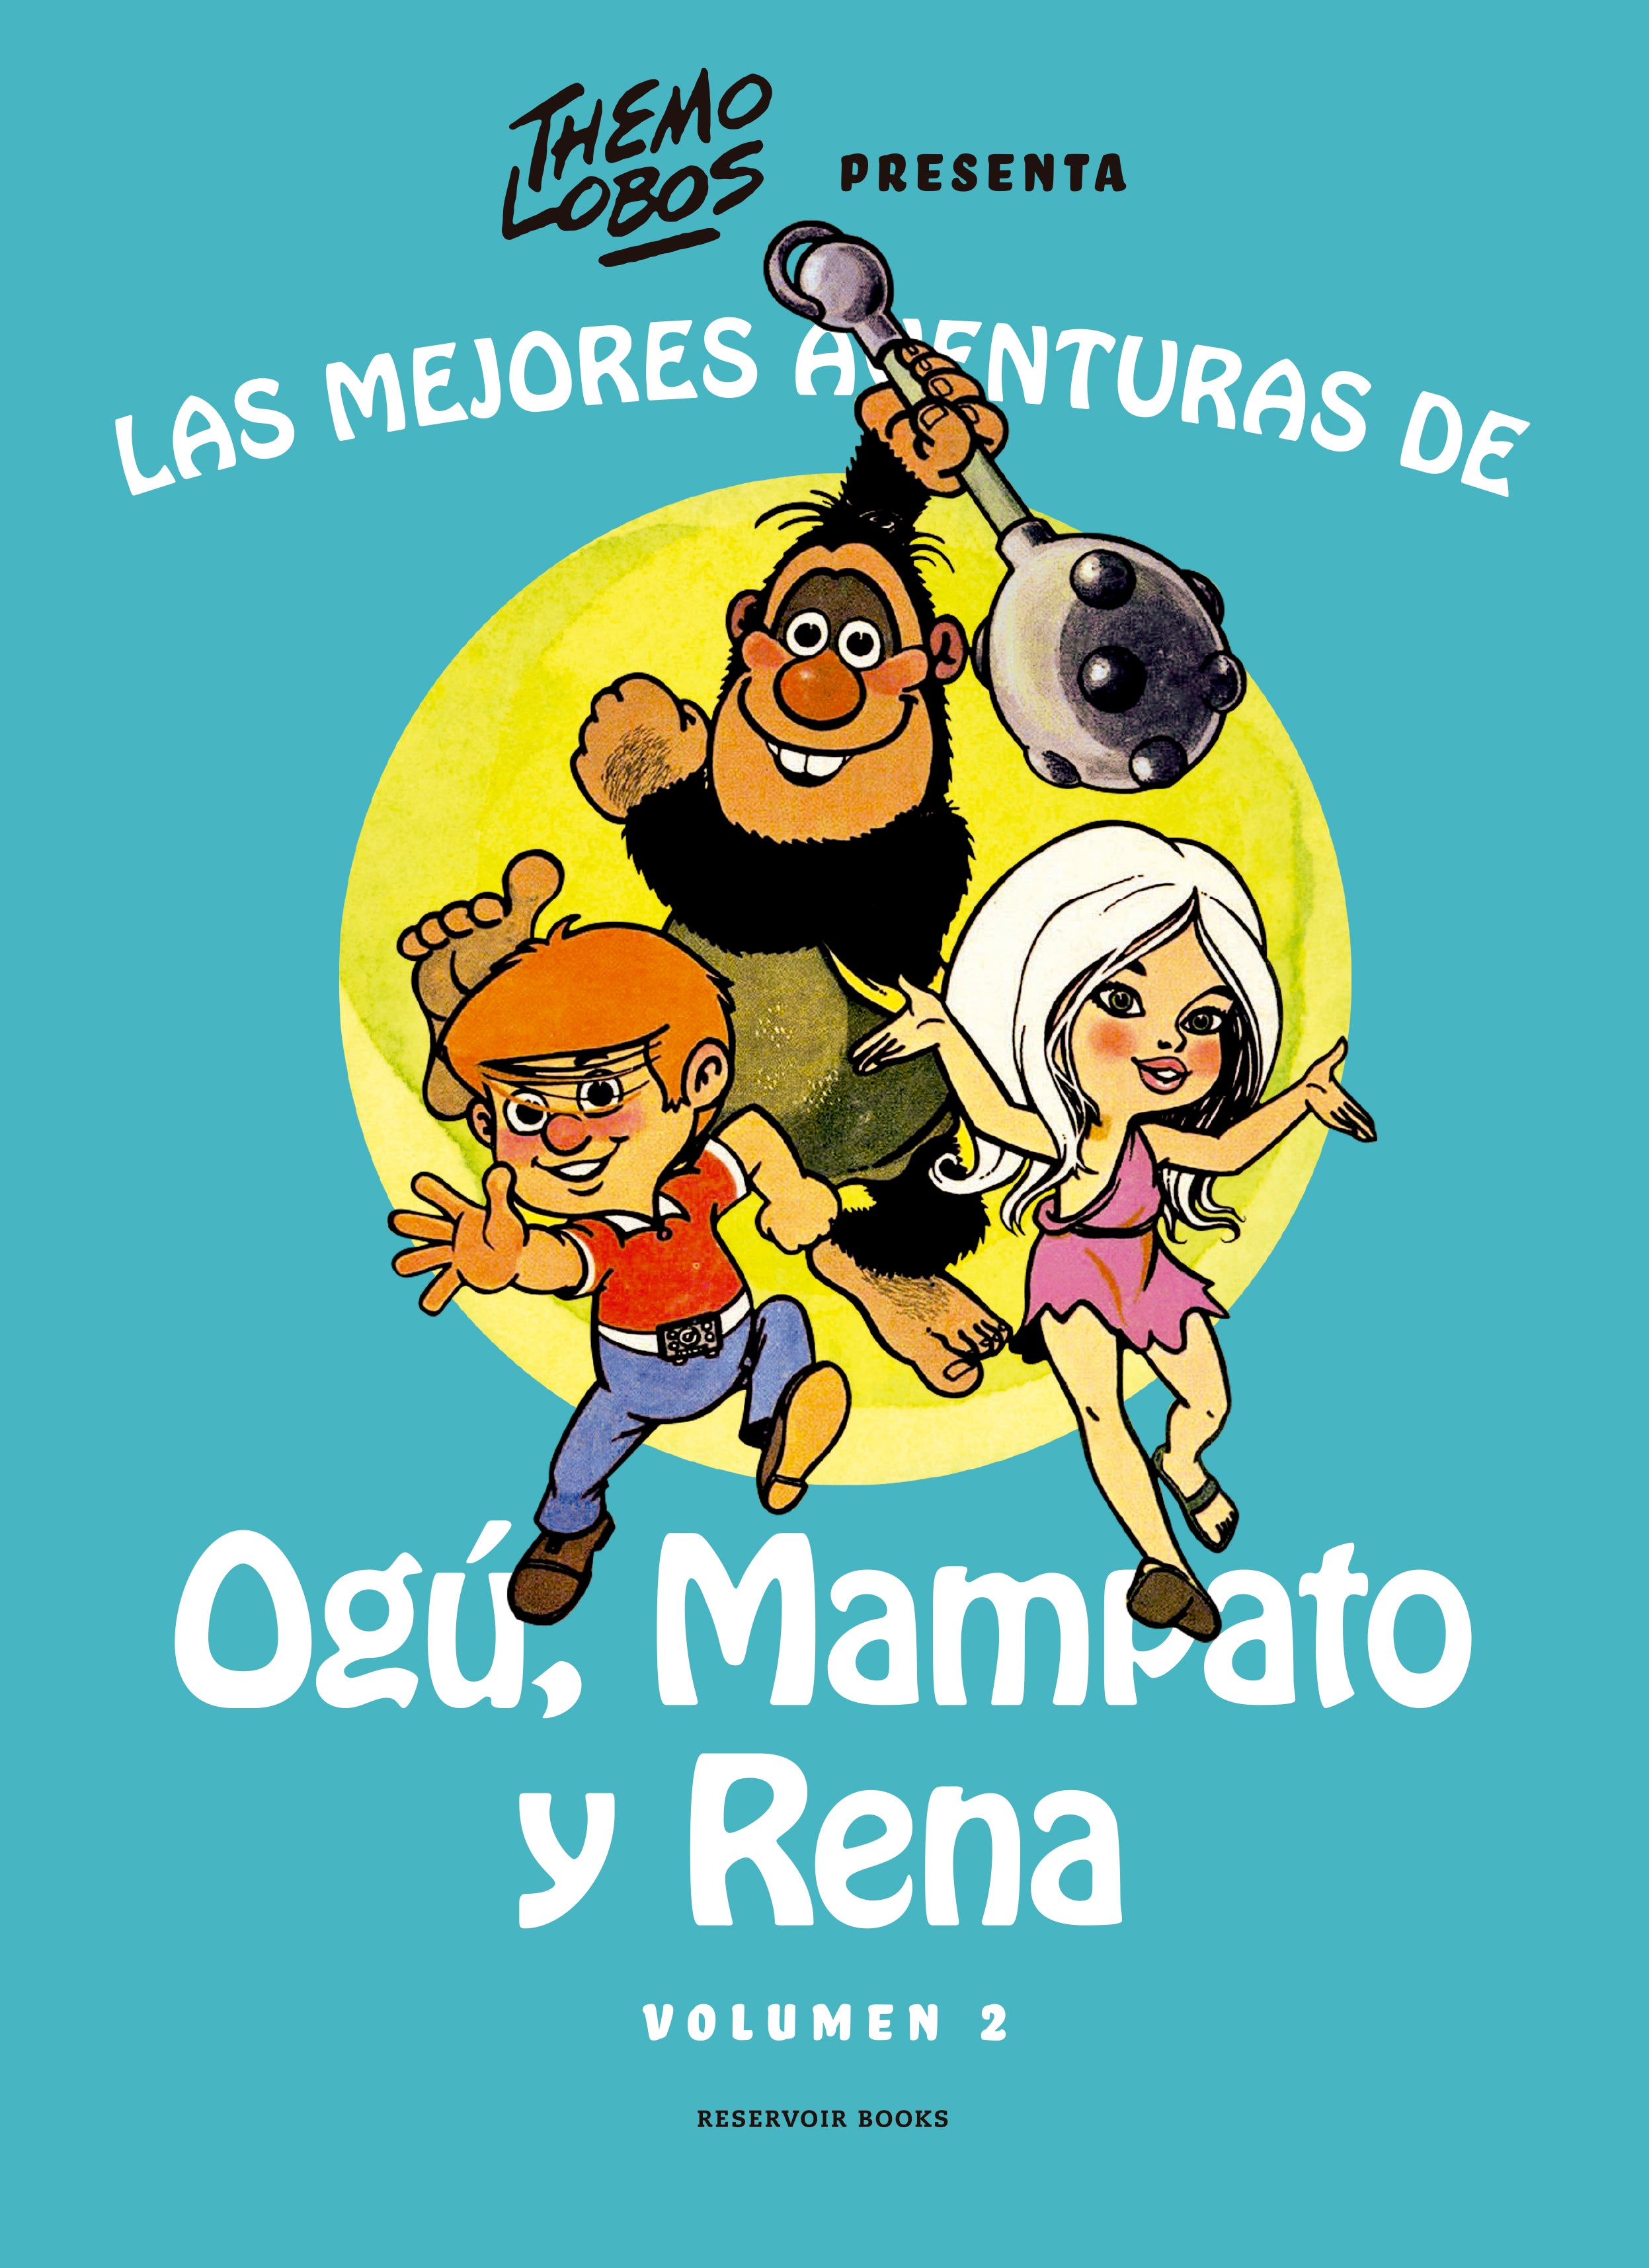 Las mejores aventuras de Ogú, Mampato y Rena vol. 2 - Themo Lobos